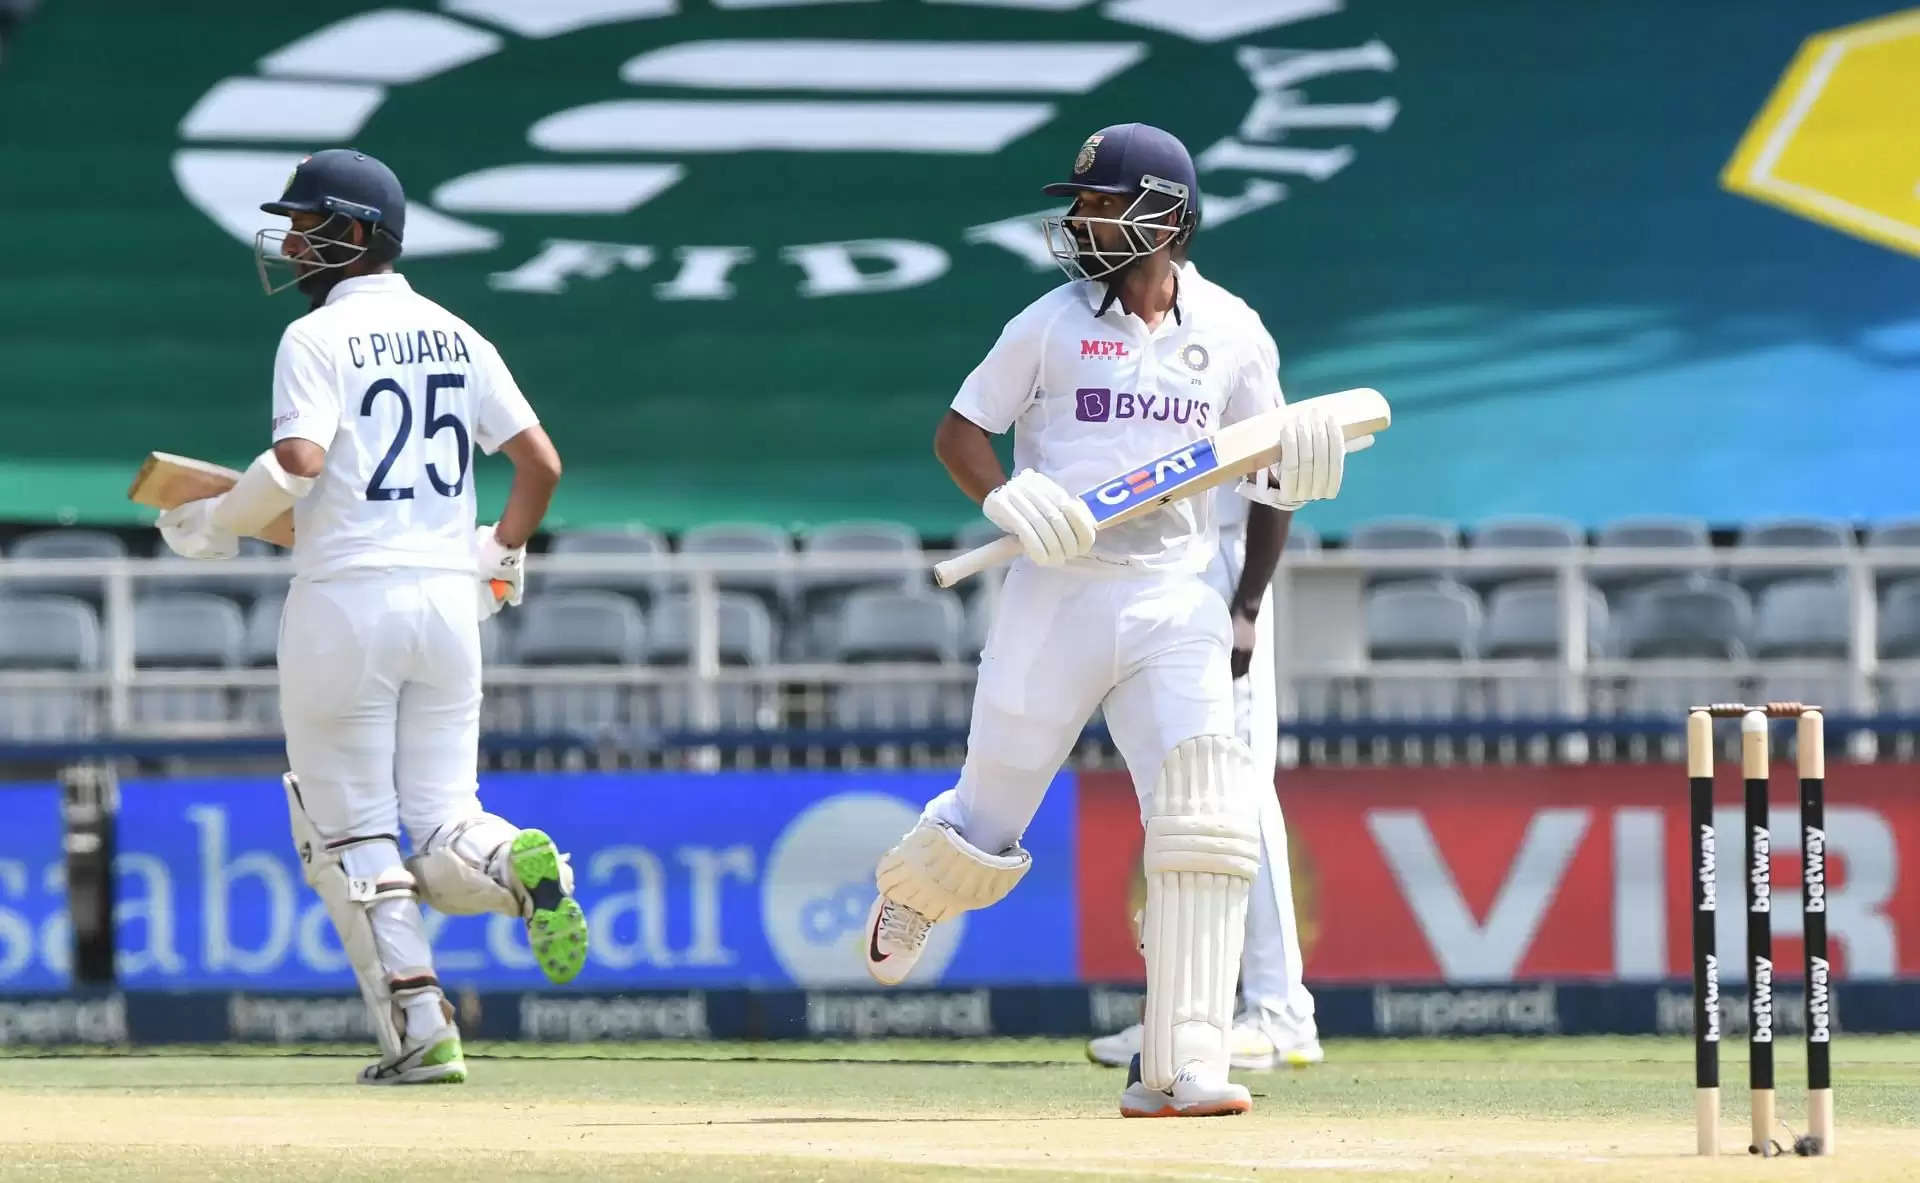 "विपक्षी टीम ने पुजारा, अजिंक्य रहाणे और मयंक अग्रवाल द्वारा बनाए गए रन के समान ही अतिरिक्त रन दिए" - भारत की बल्लेबाजी पर आकाश चोपड़ा